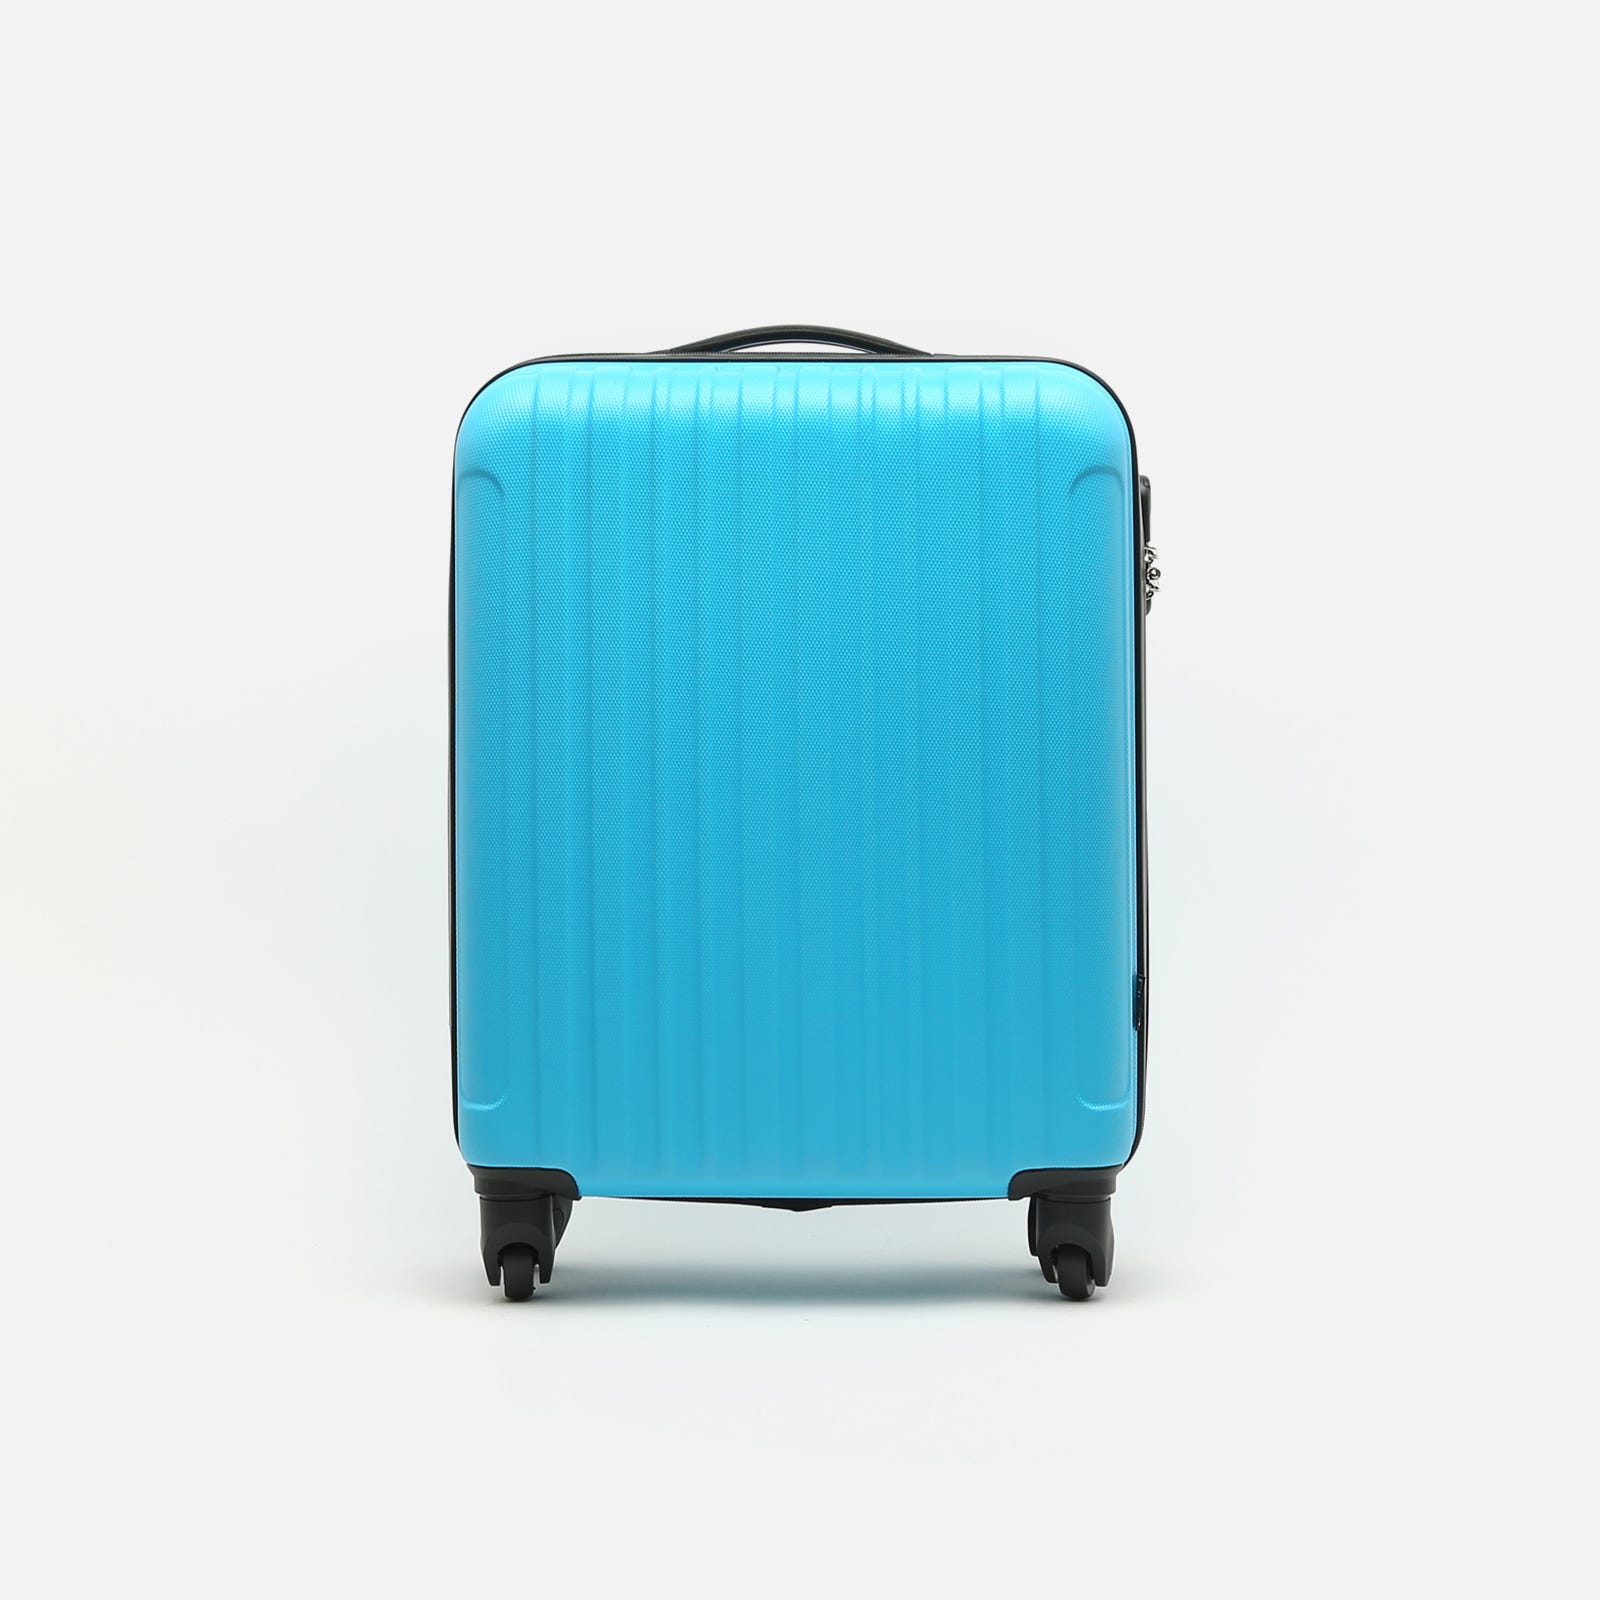 Maleta cabina outlet: ¿Es posible encontrar maletas de marcas reconocidas a precios más económicos?